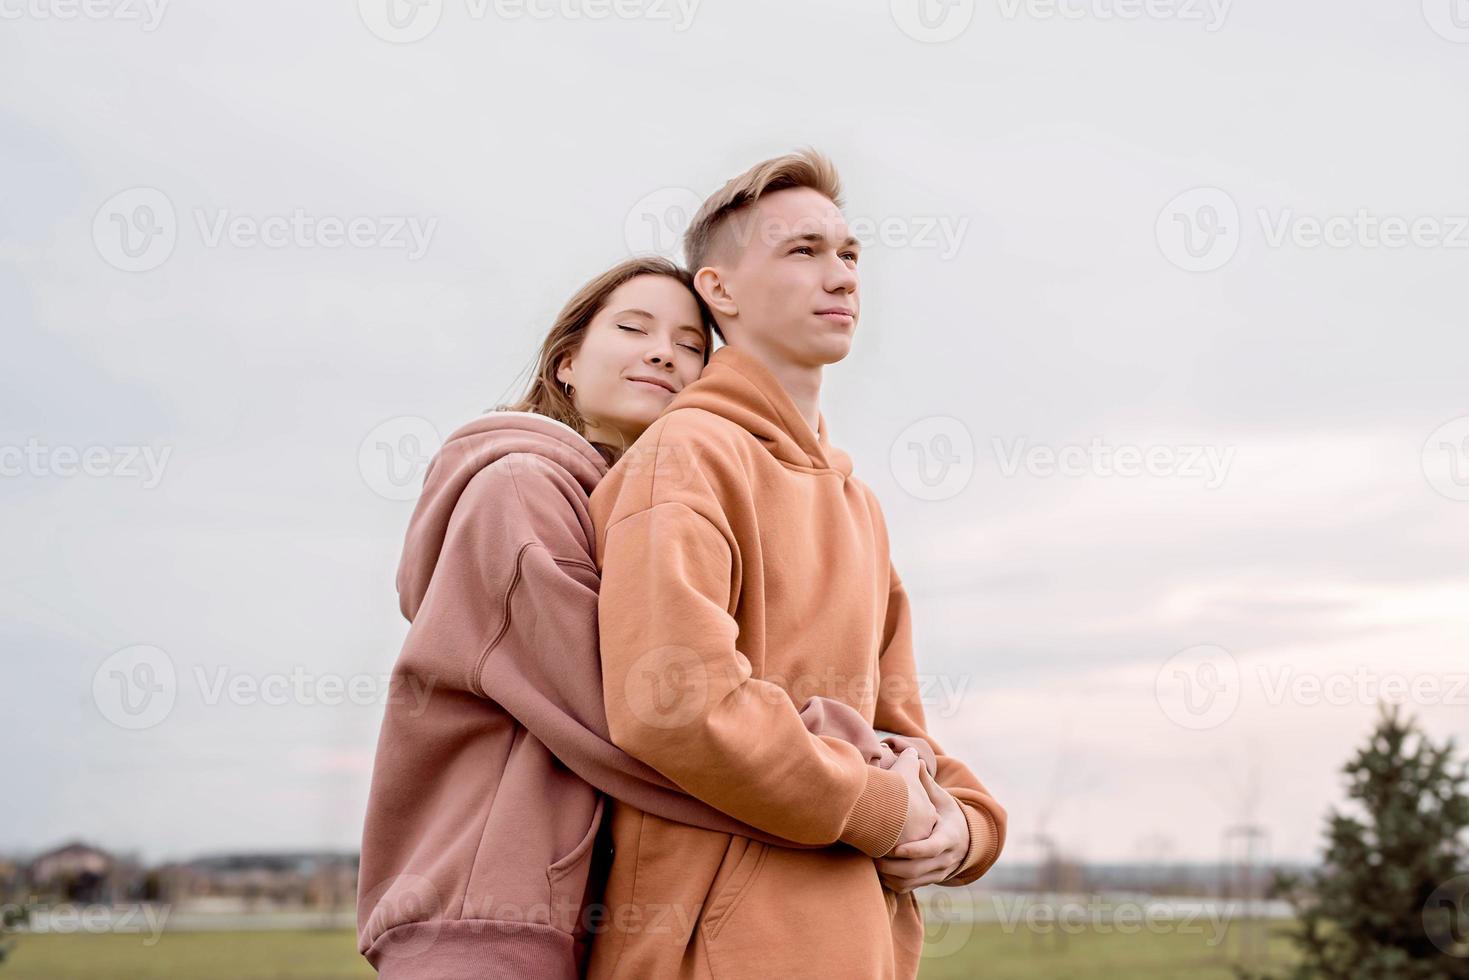 unga älskande par som omfamnar varandra utomhus i parken foto